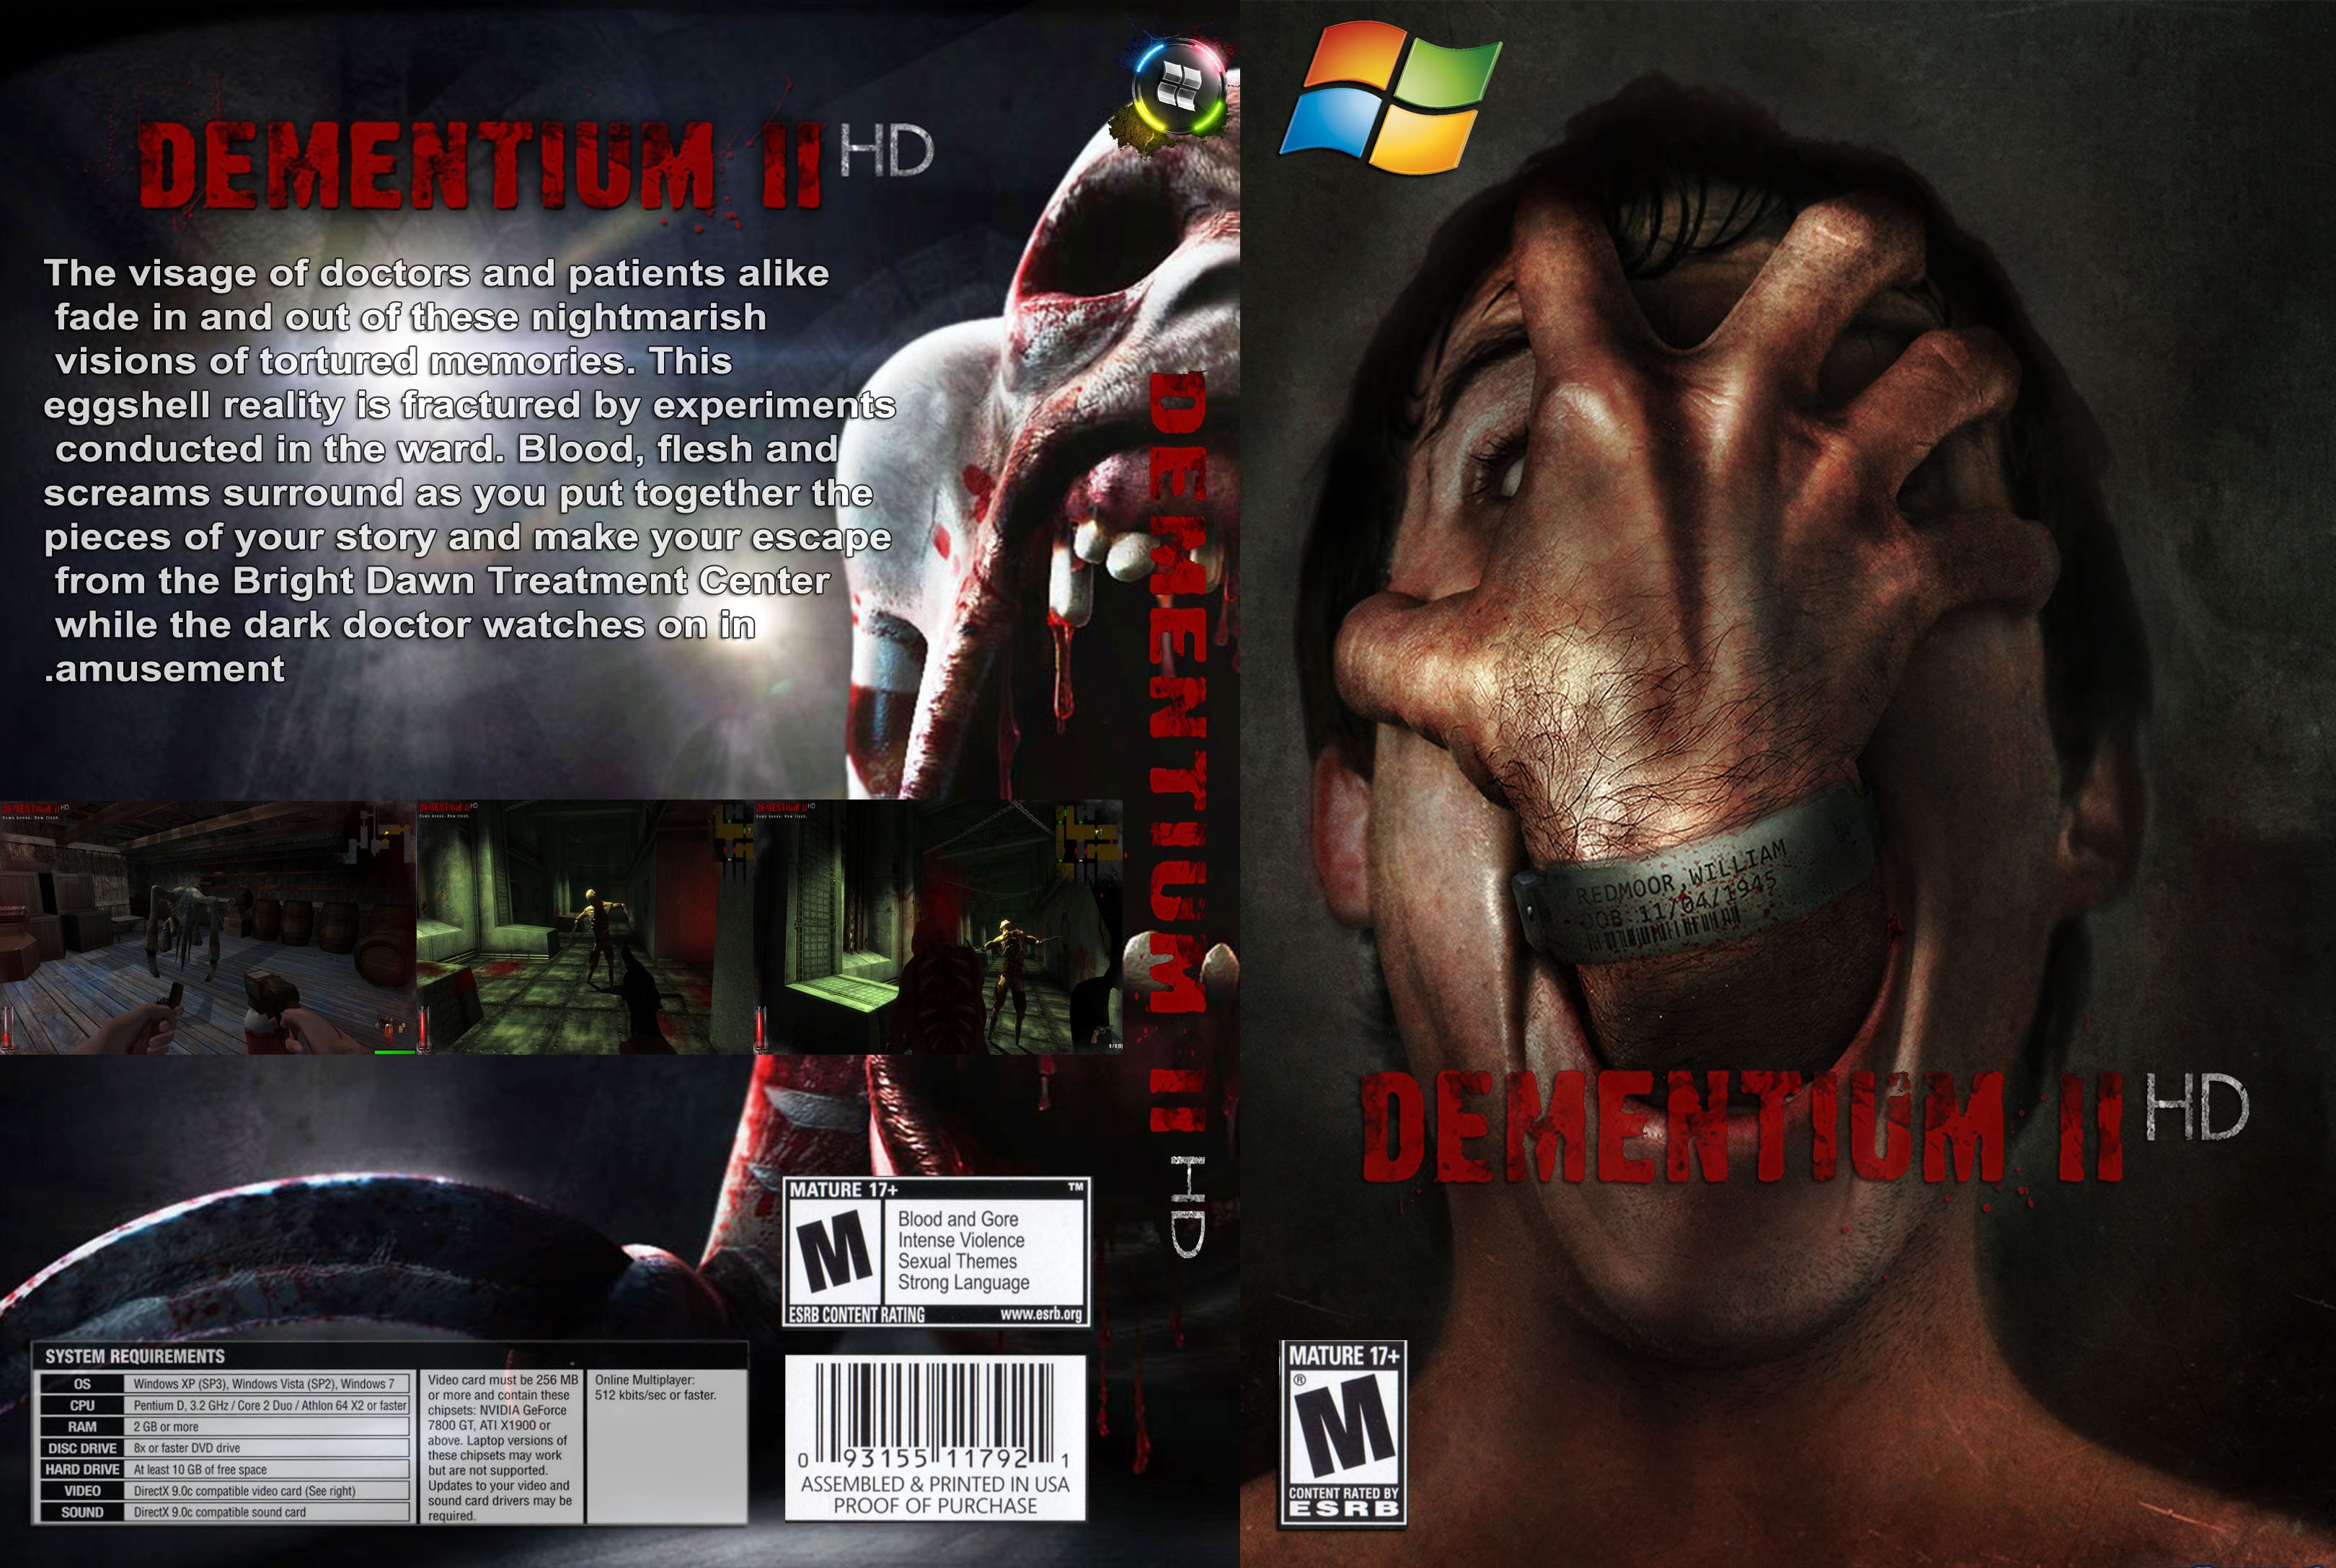 Dementium II HD box cover